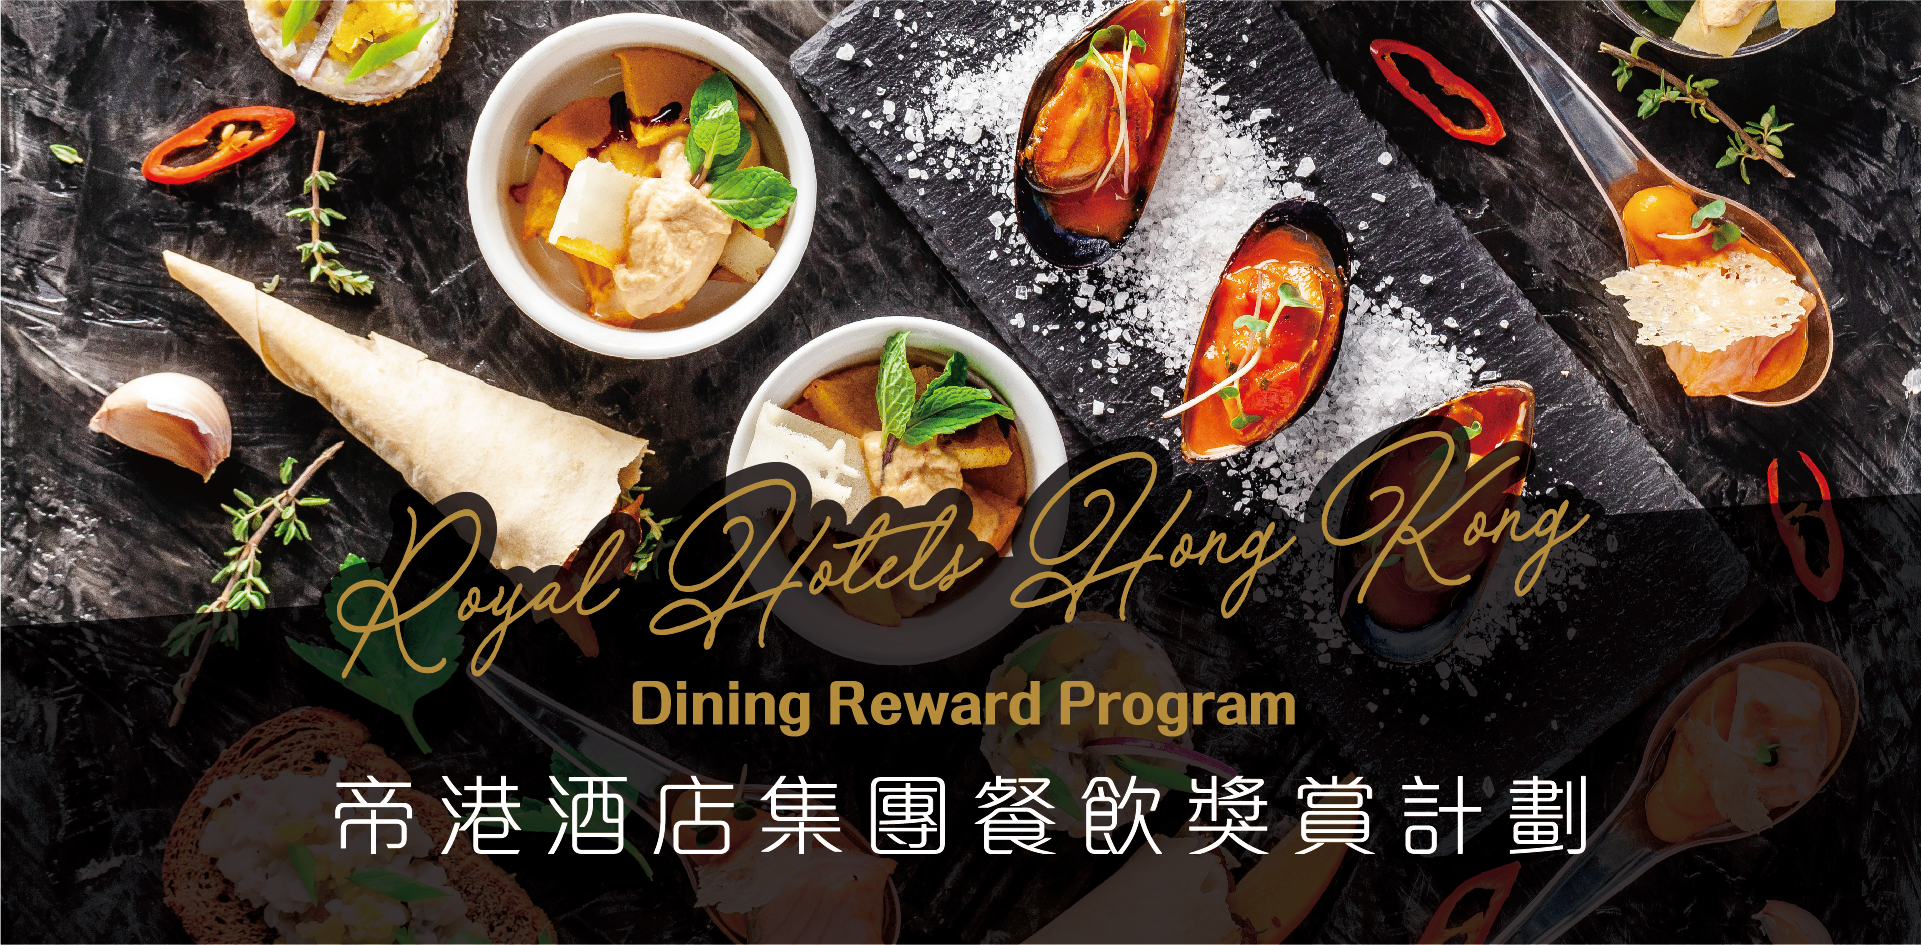 帝港酒店集團餐飲獎賞計劃 Royal Hotels Hong Kong Dining Reward Program